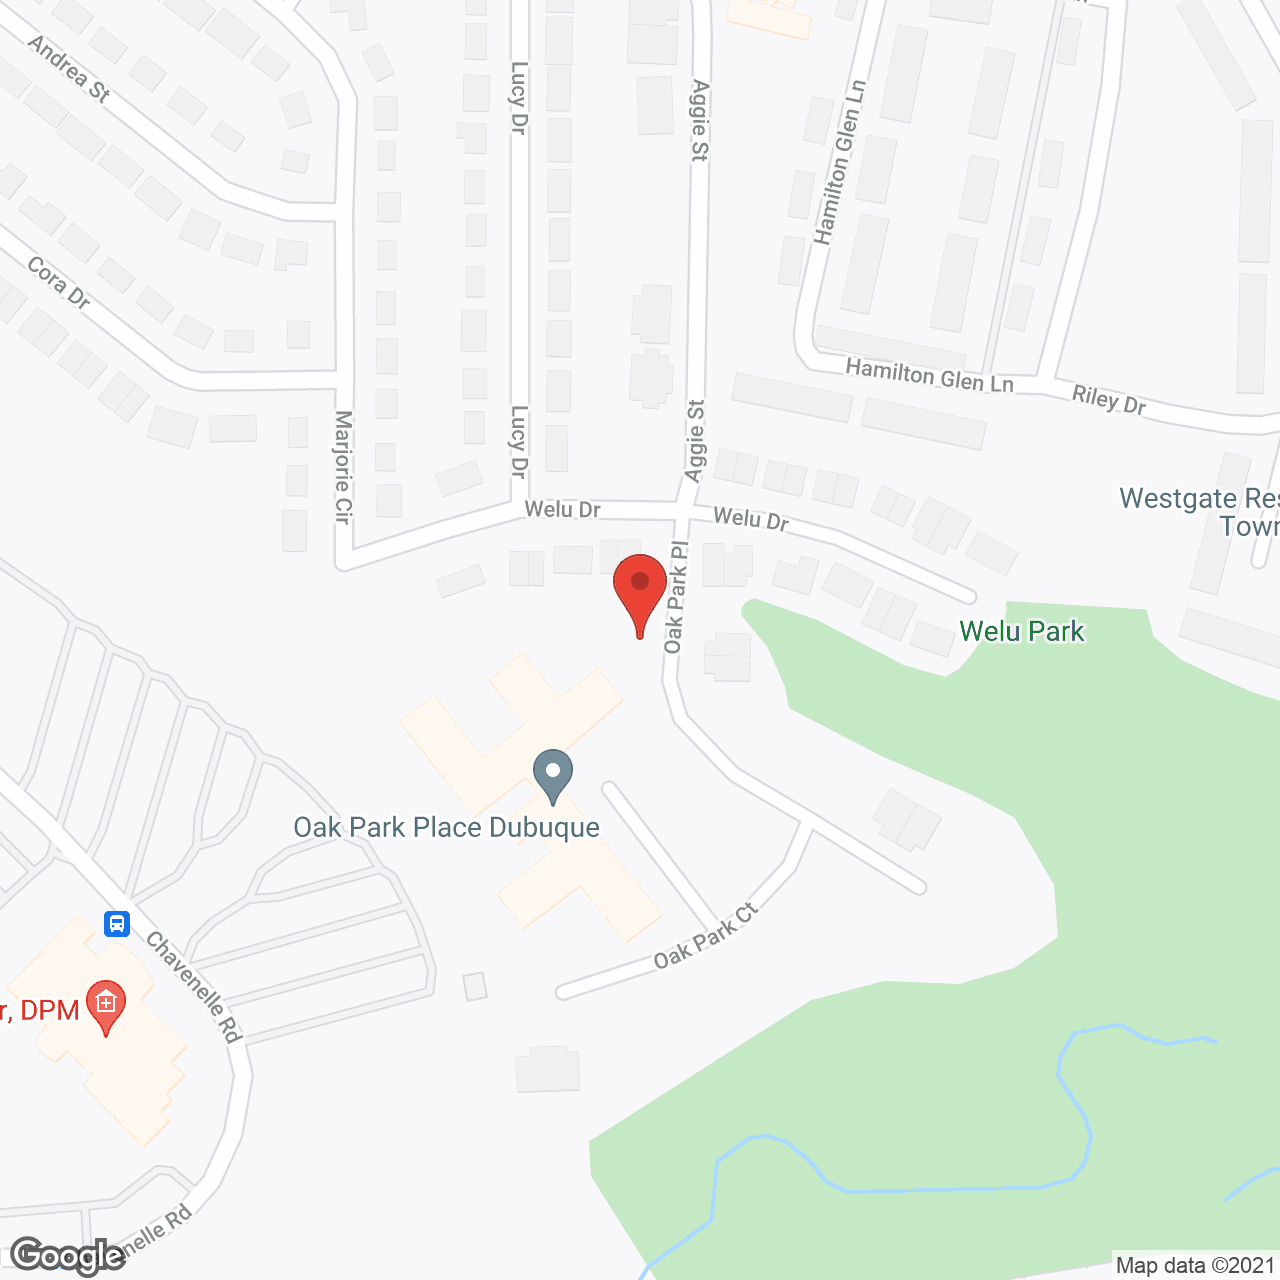 Oak Park Place - Dubuque in google map